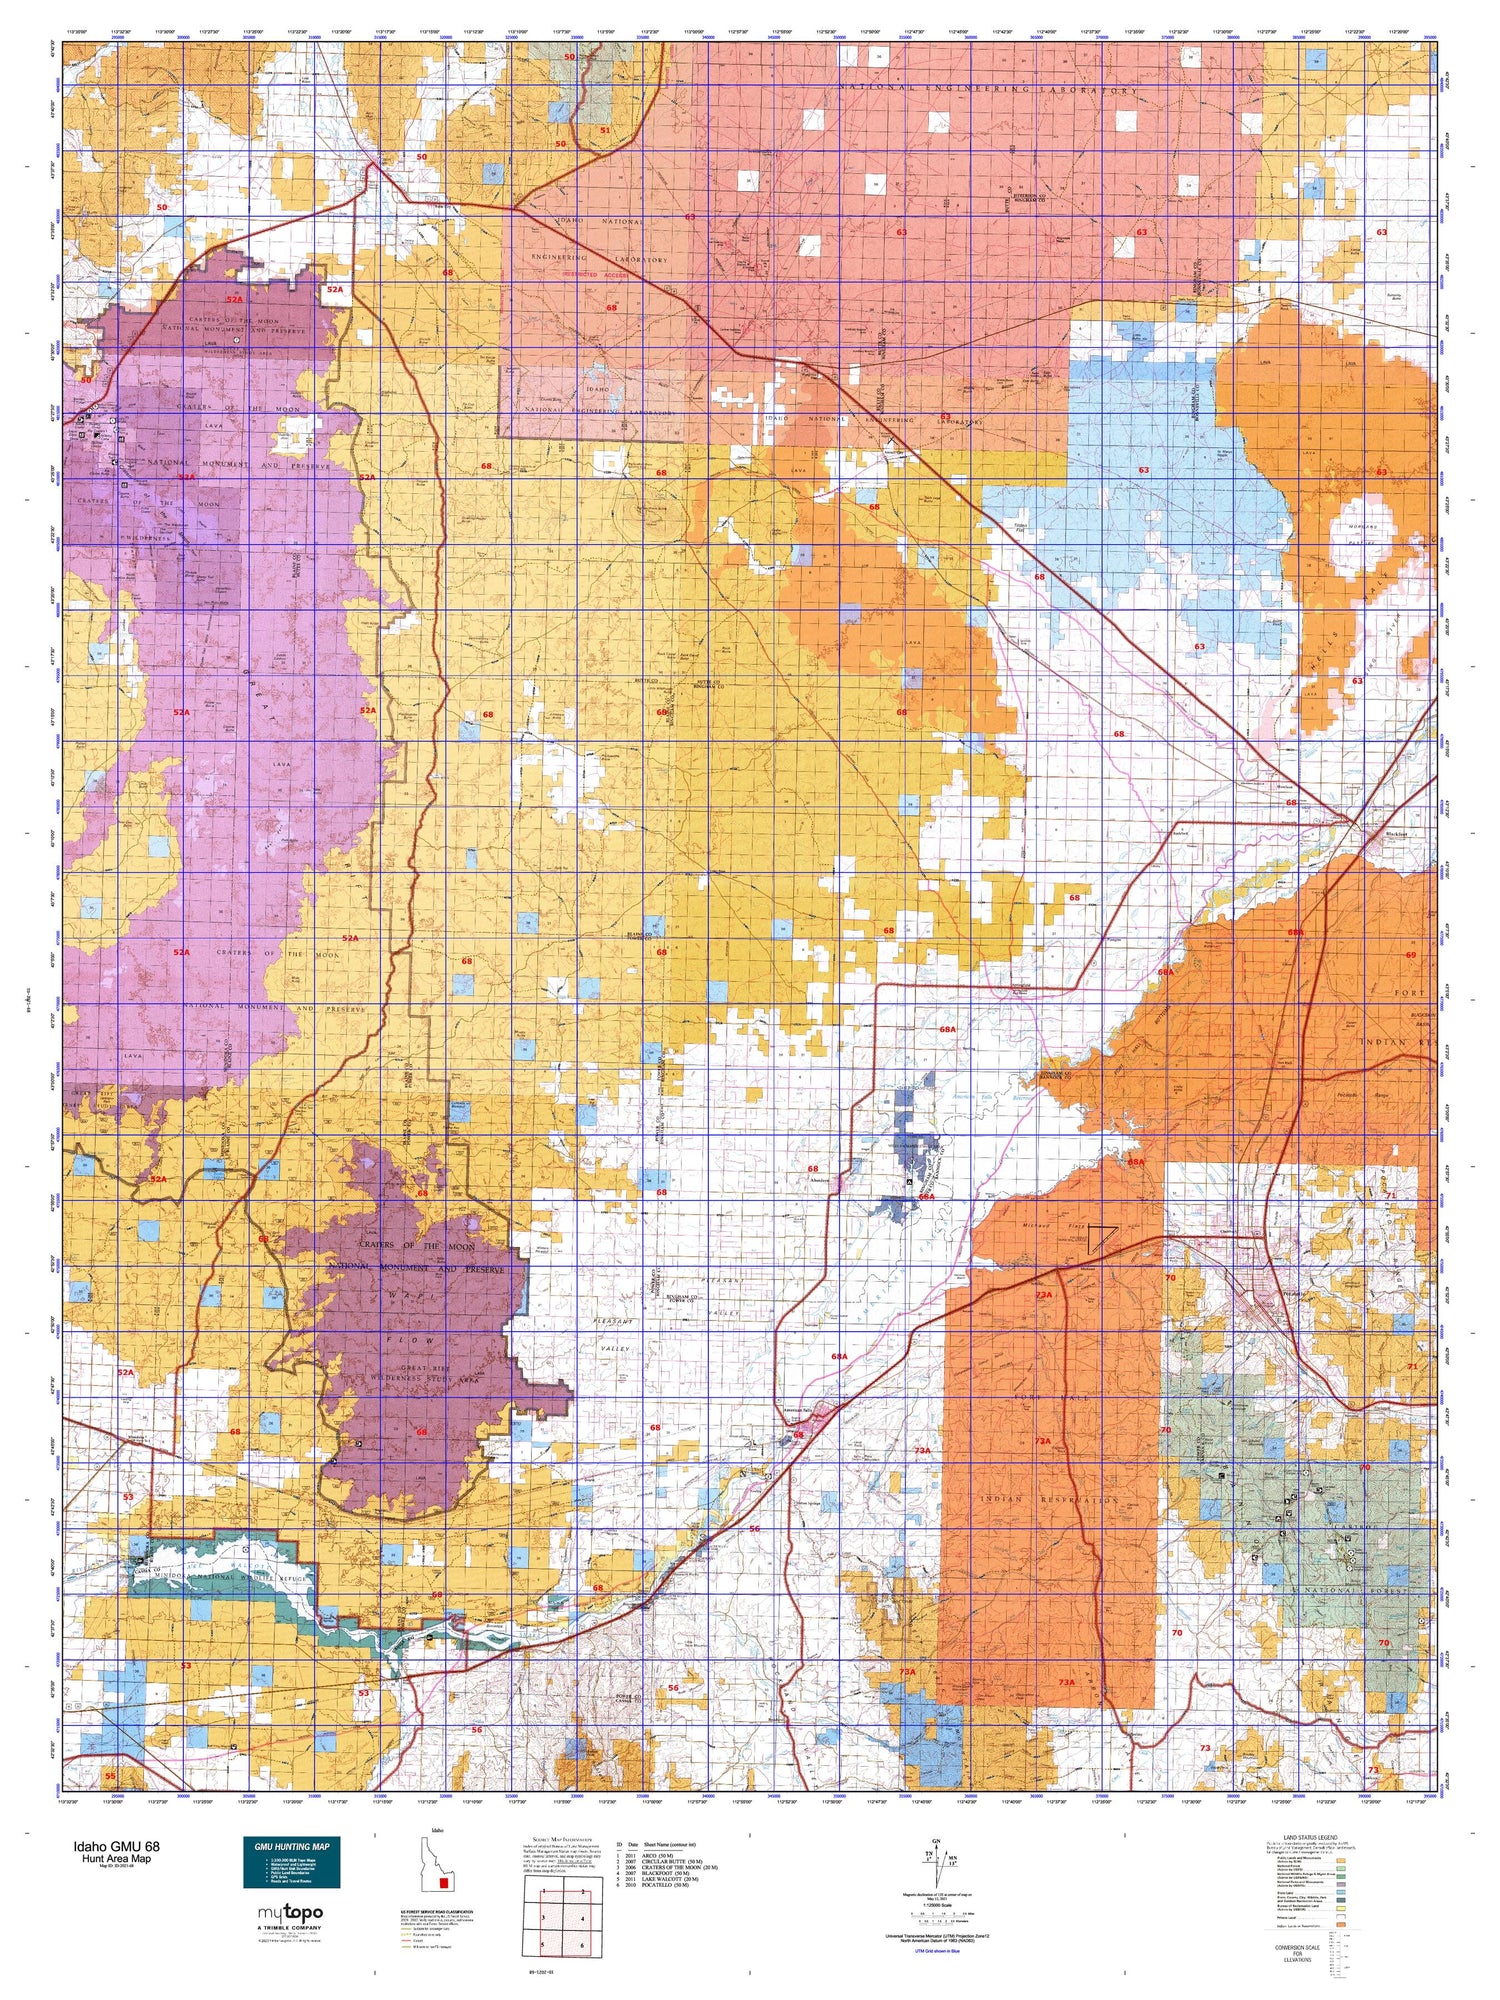 Idaho GMU 68 Map Image